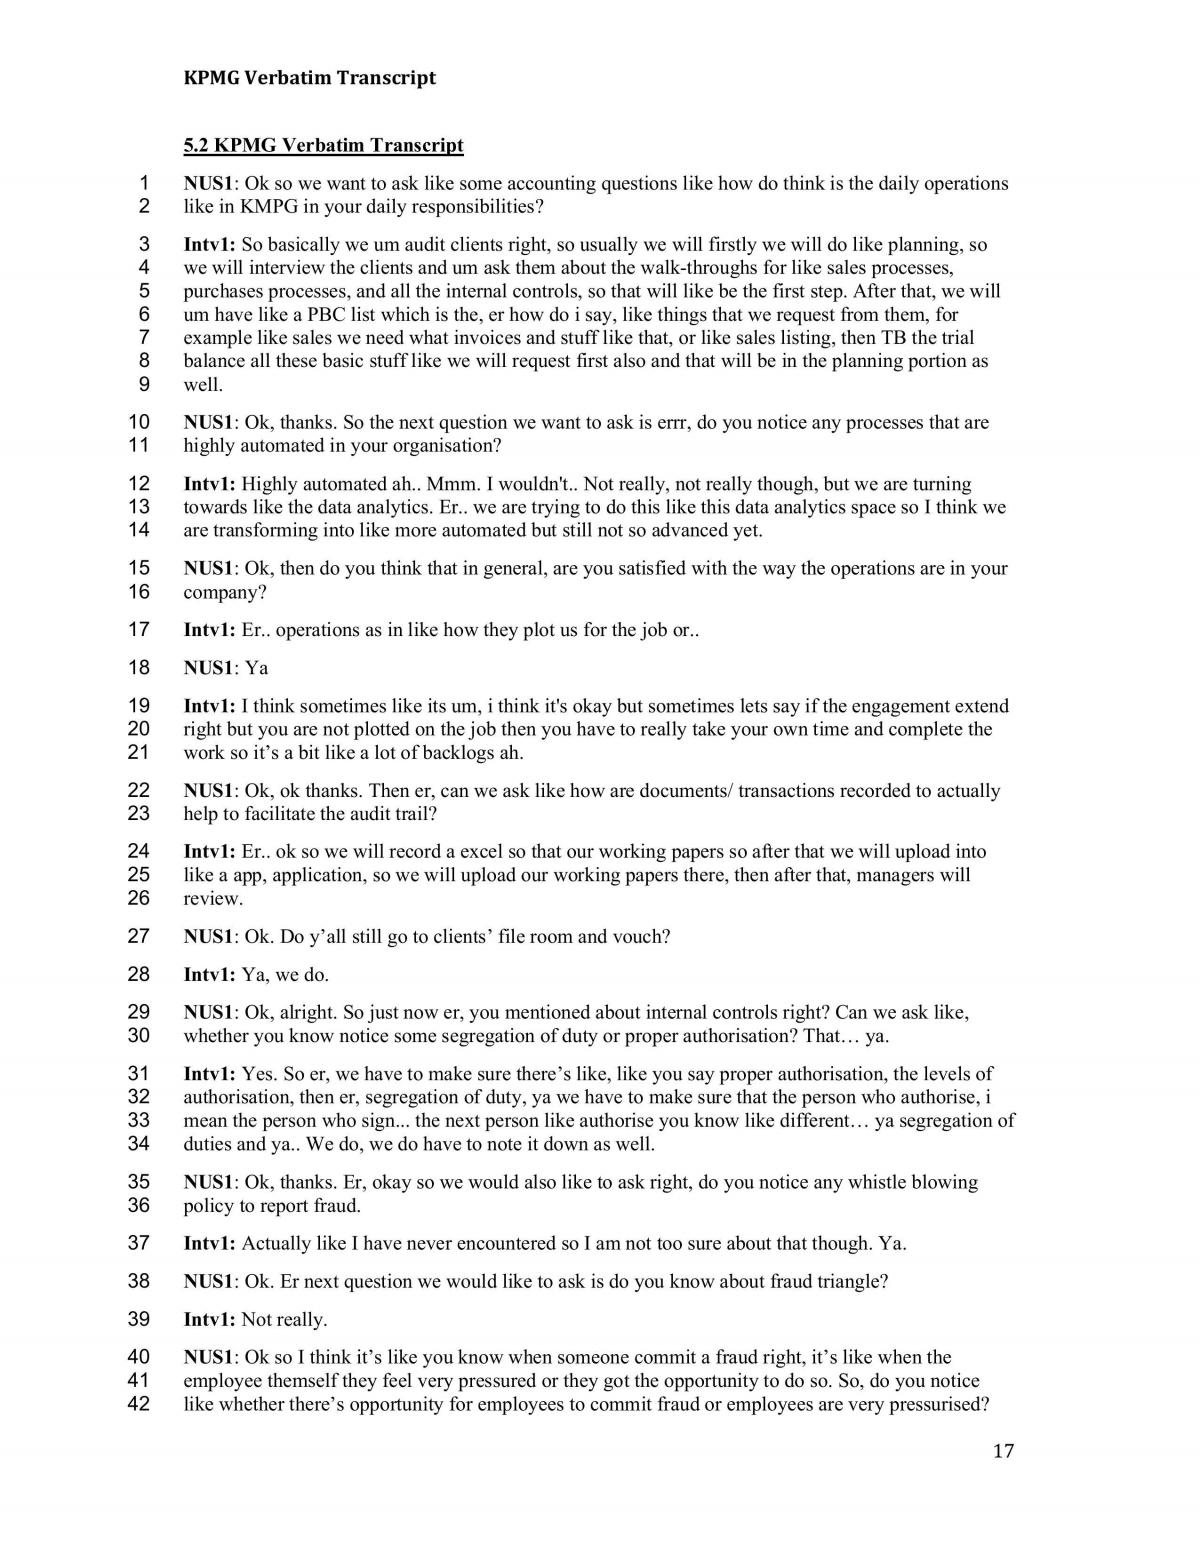 AIS evaluation with KPMG and TikTok - Page 17